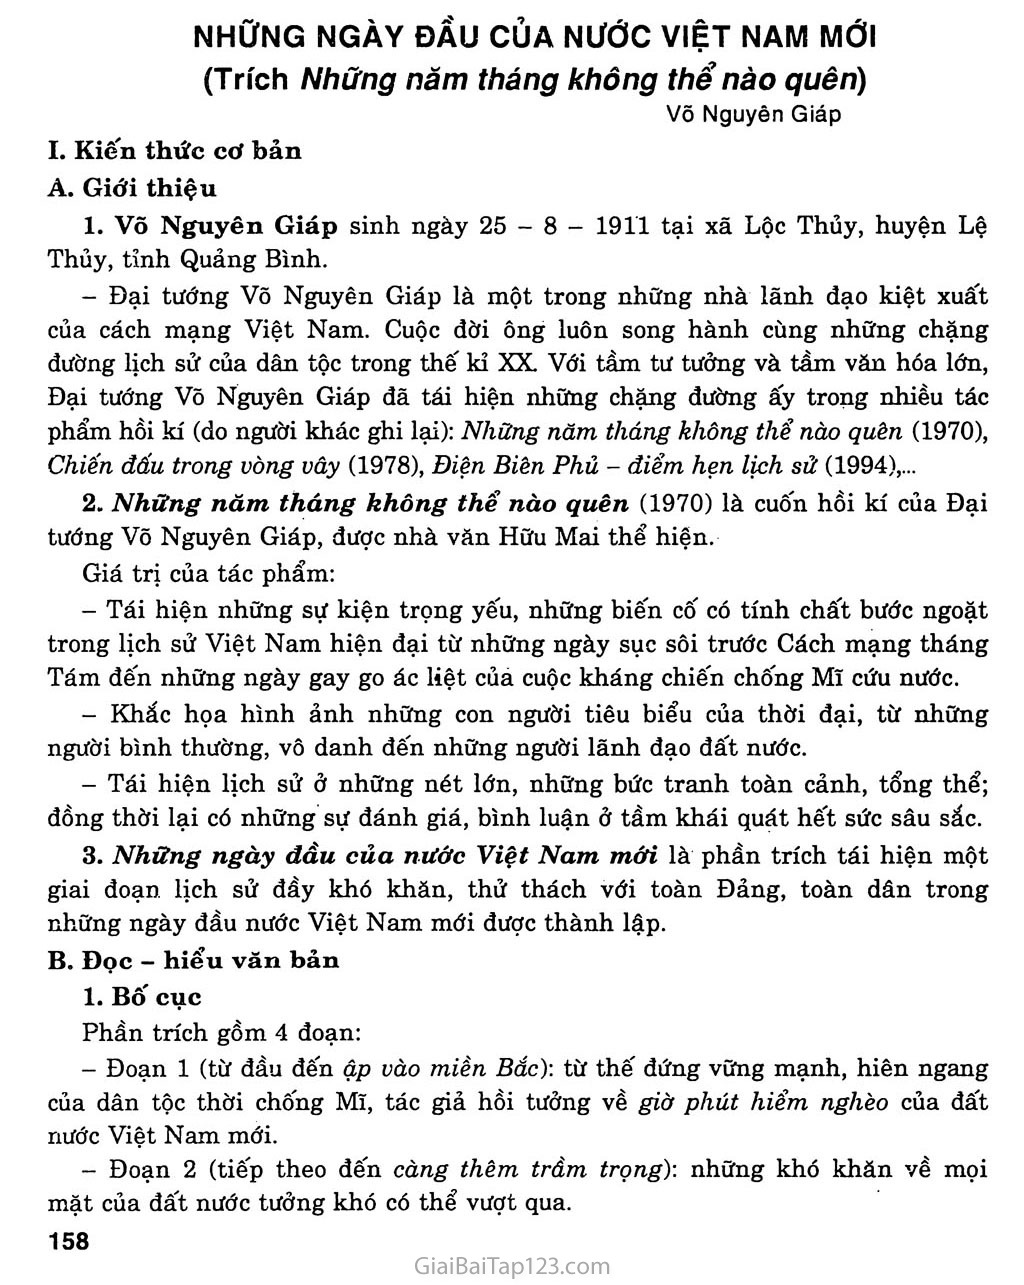 Những ngày đầu của nước Việt Nam mới (Võ Nguyên Giáp, 1970) trang 1